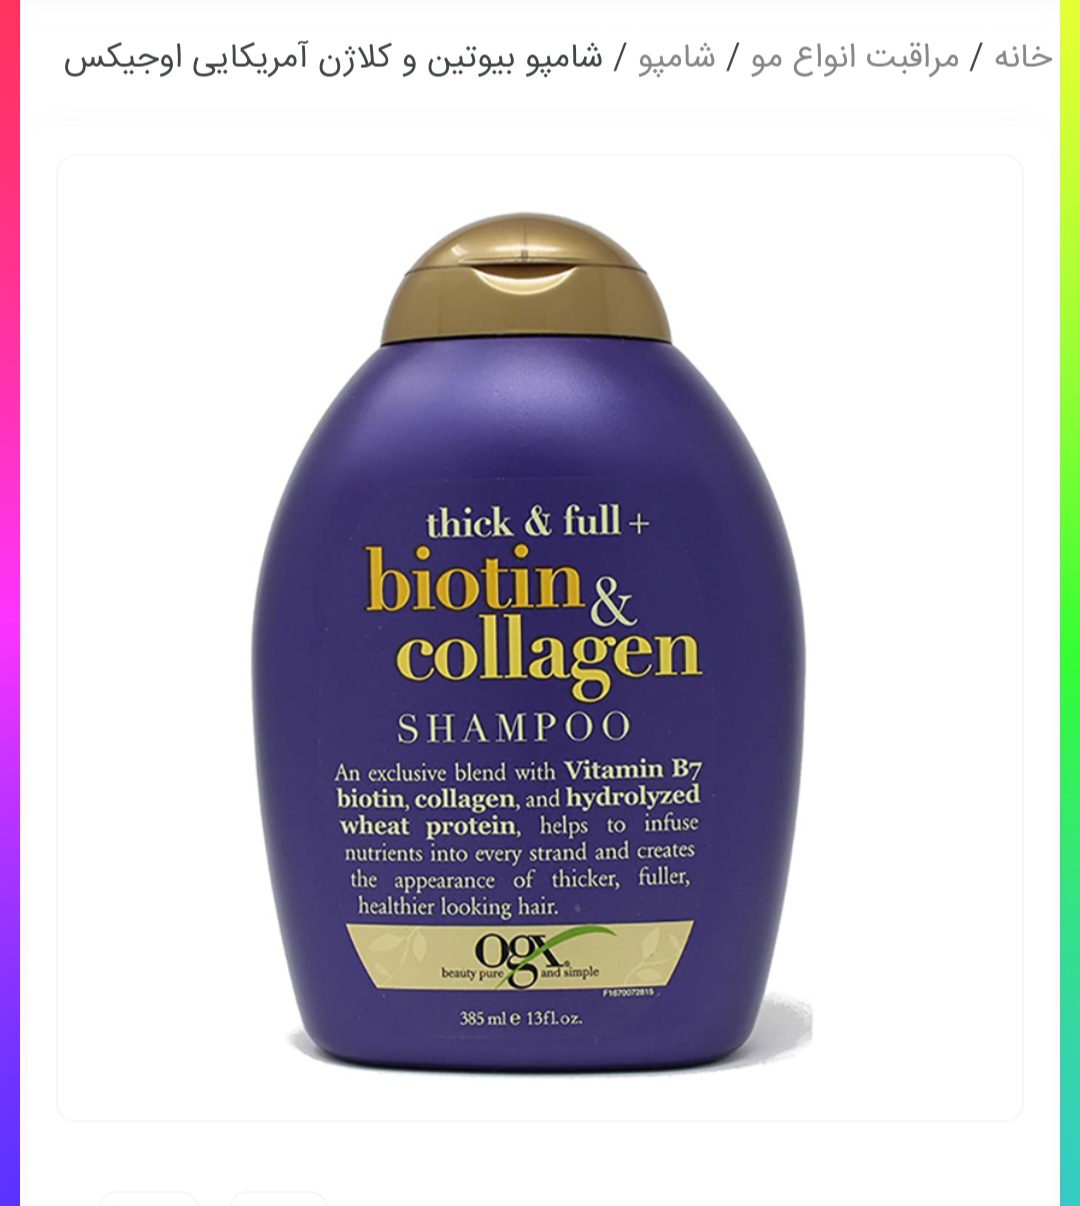 شامپو بیوتن و کلاژن اوجیکس - شامپو ضد ریزش مو 
ضخیم کننده مو 
درخشان و ترمیم کننده مو 
فاقد سولفات و پاربن 
محصول کشور امریکا